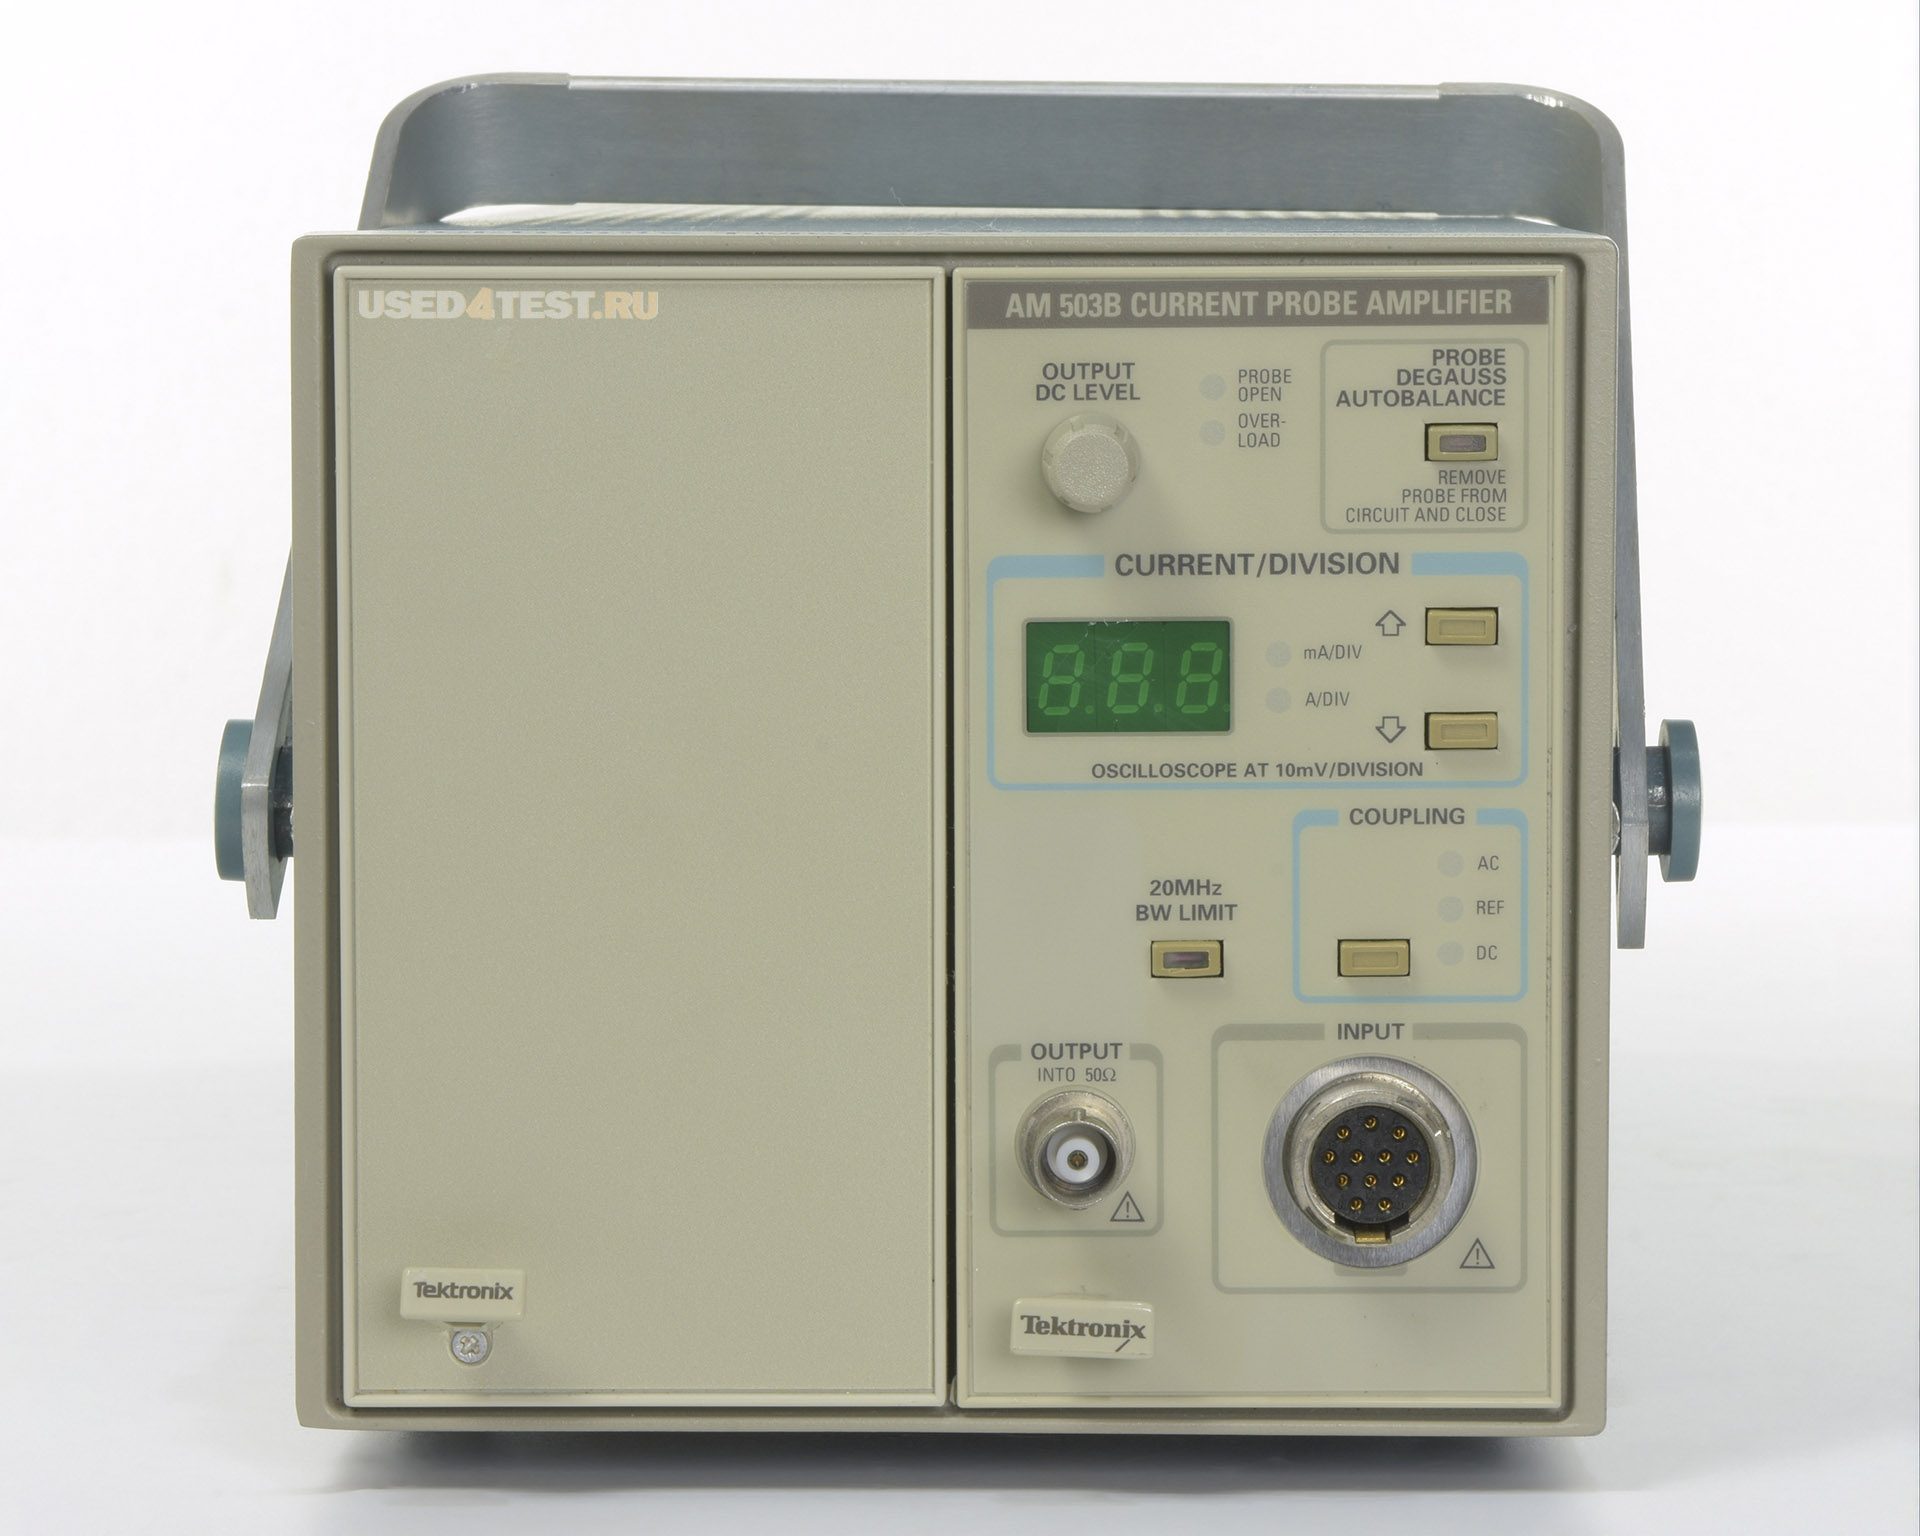 Система измерения токовых пробниковTektronix AM503S: AM 503B, A6302, TM 502A
 Стоимость указана в Рублях DDP Москва по безналичному расчету включая НДС 20%

